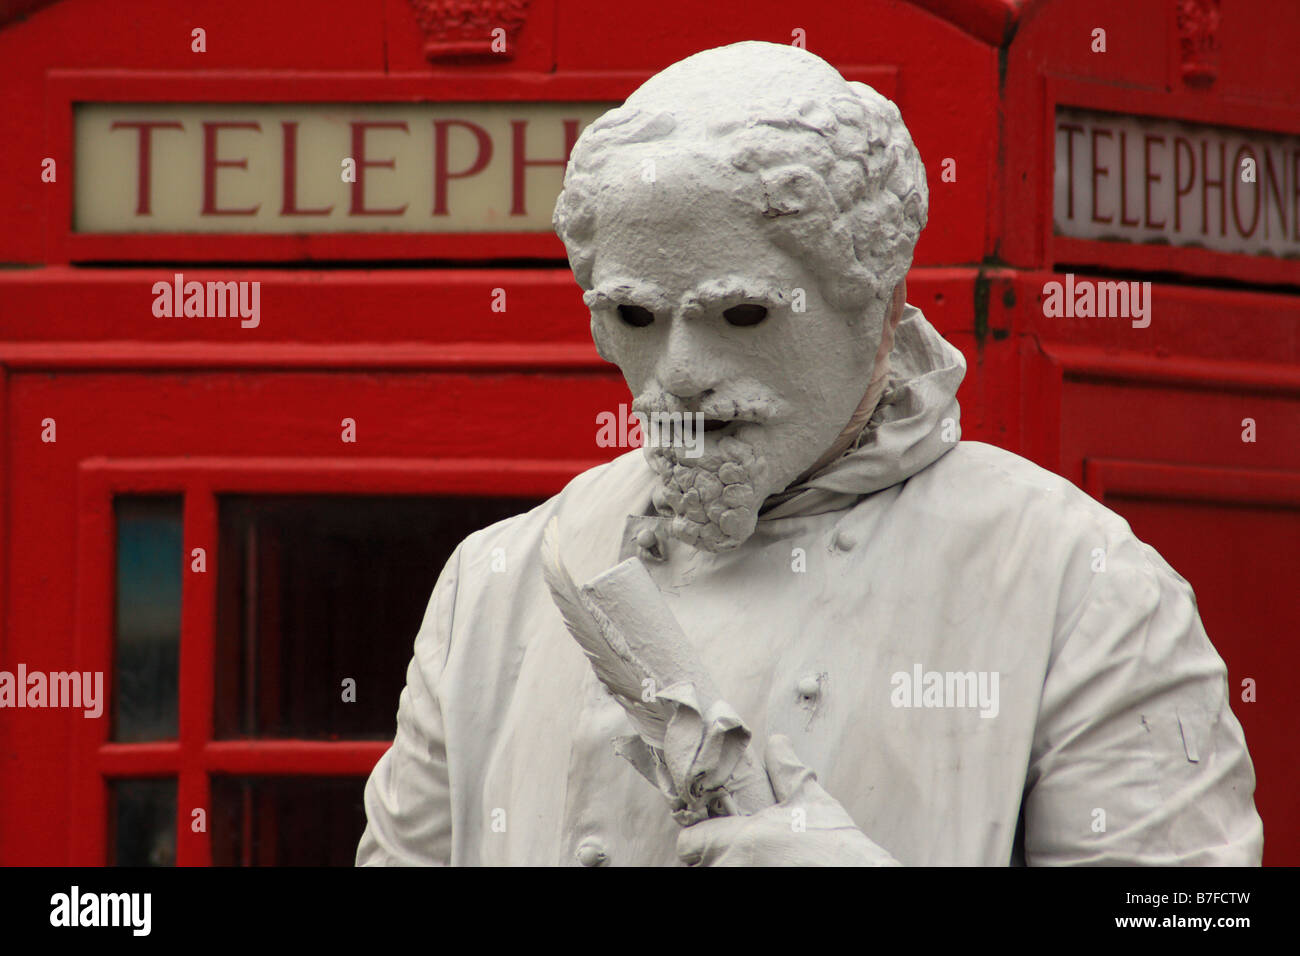 Artiste de rue statue vivante fonctionne comme le dramaturge William Shakespeare, à Stratford-upon-Avon, Warwickshire, UK Banque D'Images